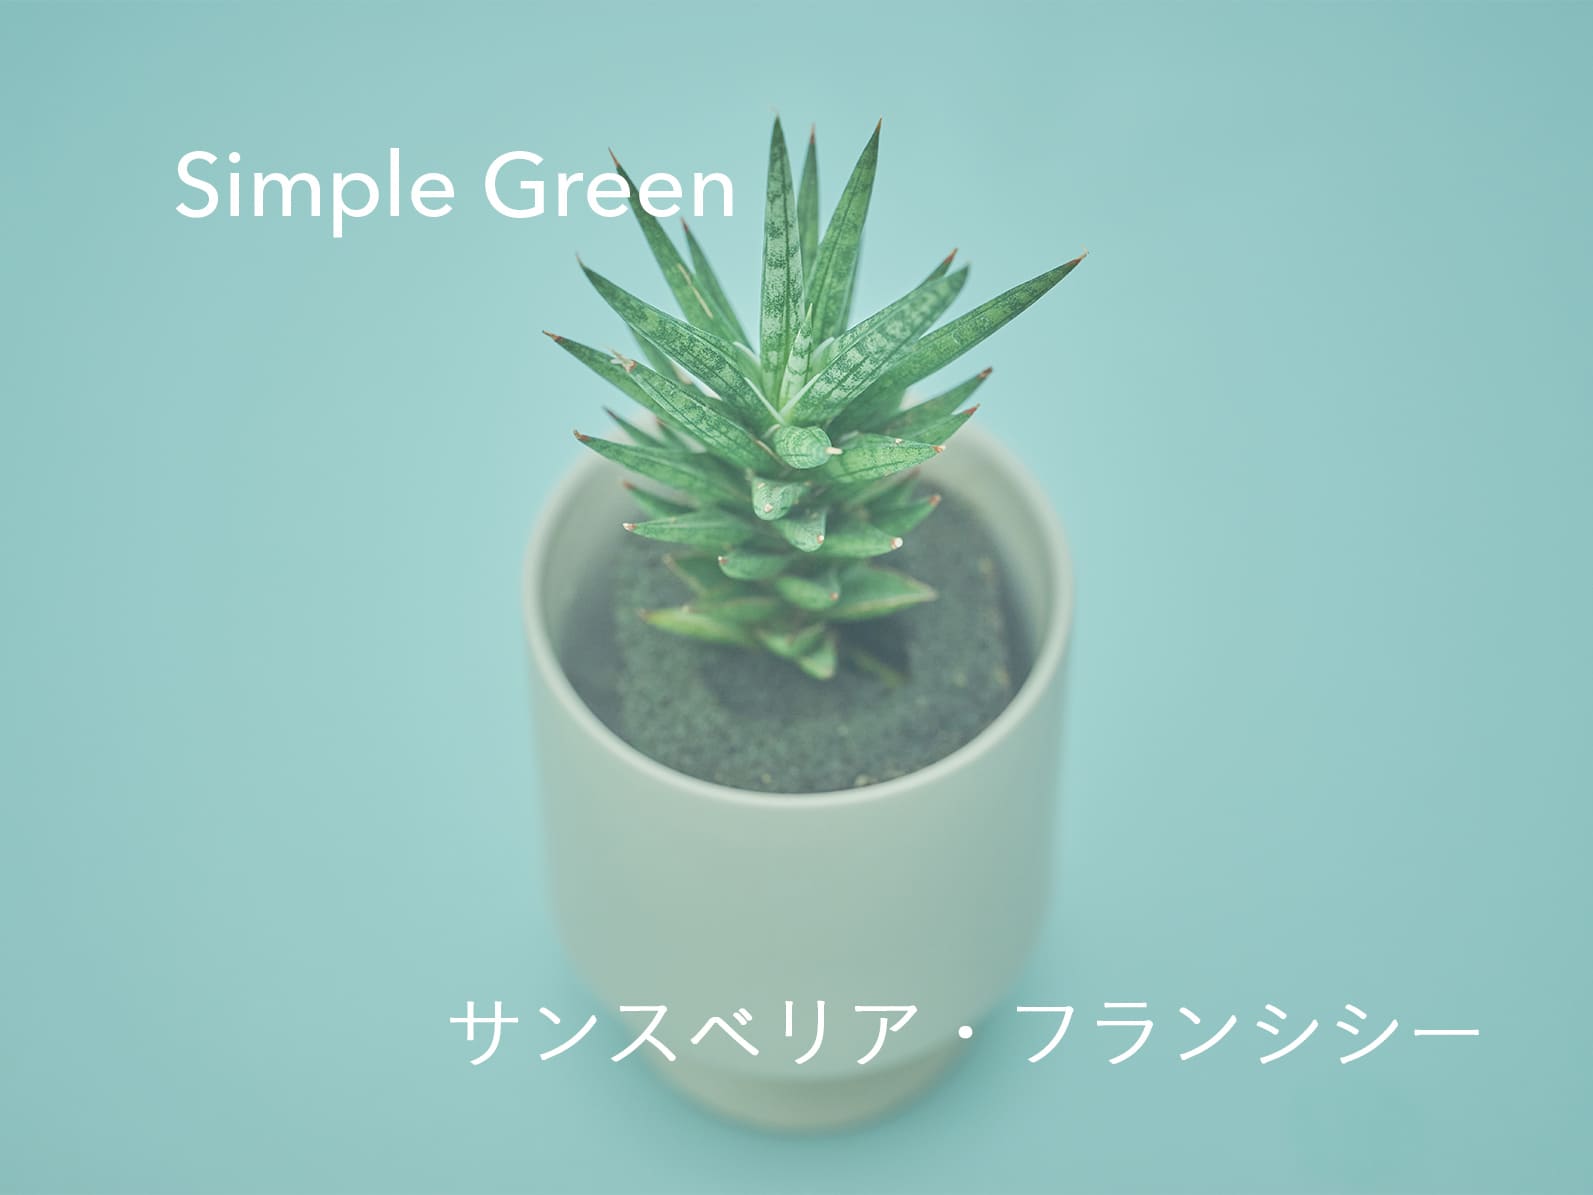 水だけで育つ観葉植物&Green Simple Green サンスベリア・フランシシー